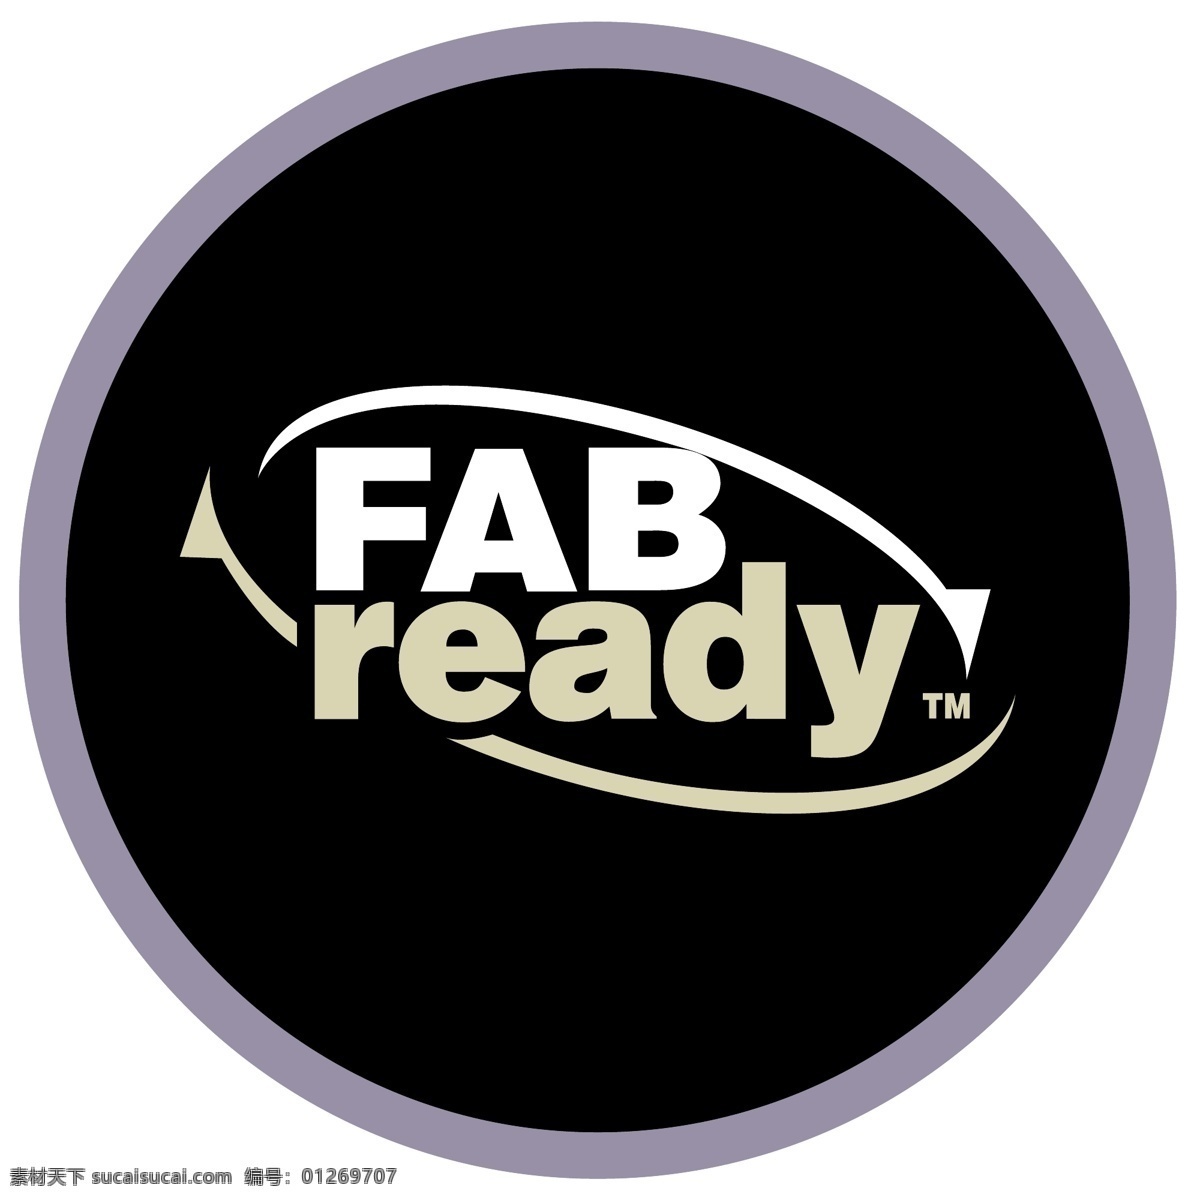 工厂 准备 免费的fab ready 标识 fab psd源文件 logo设计